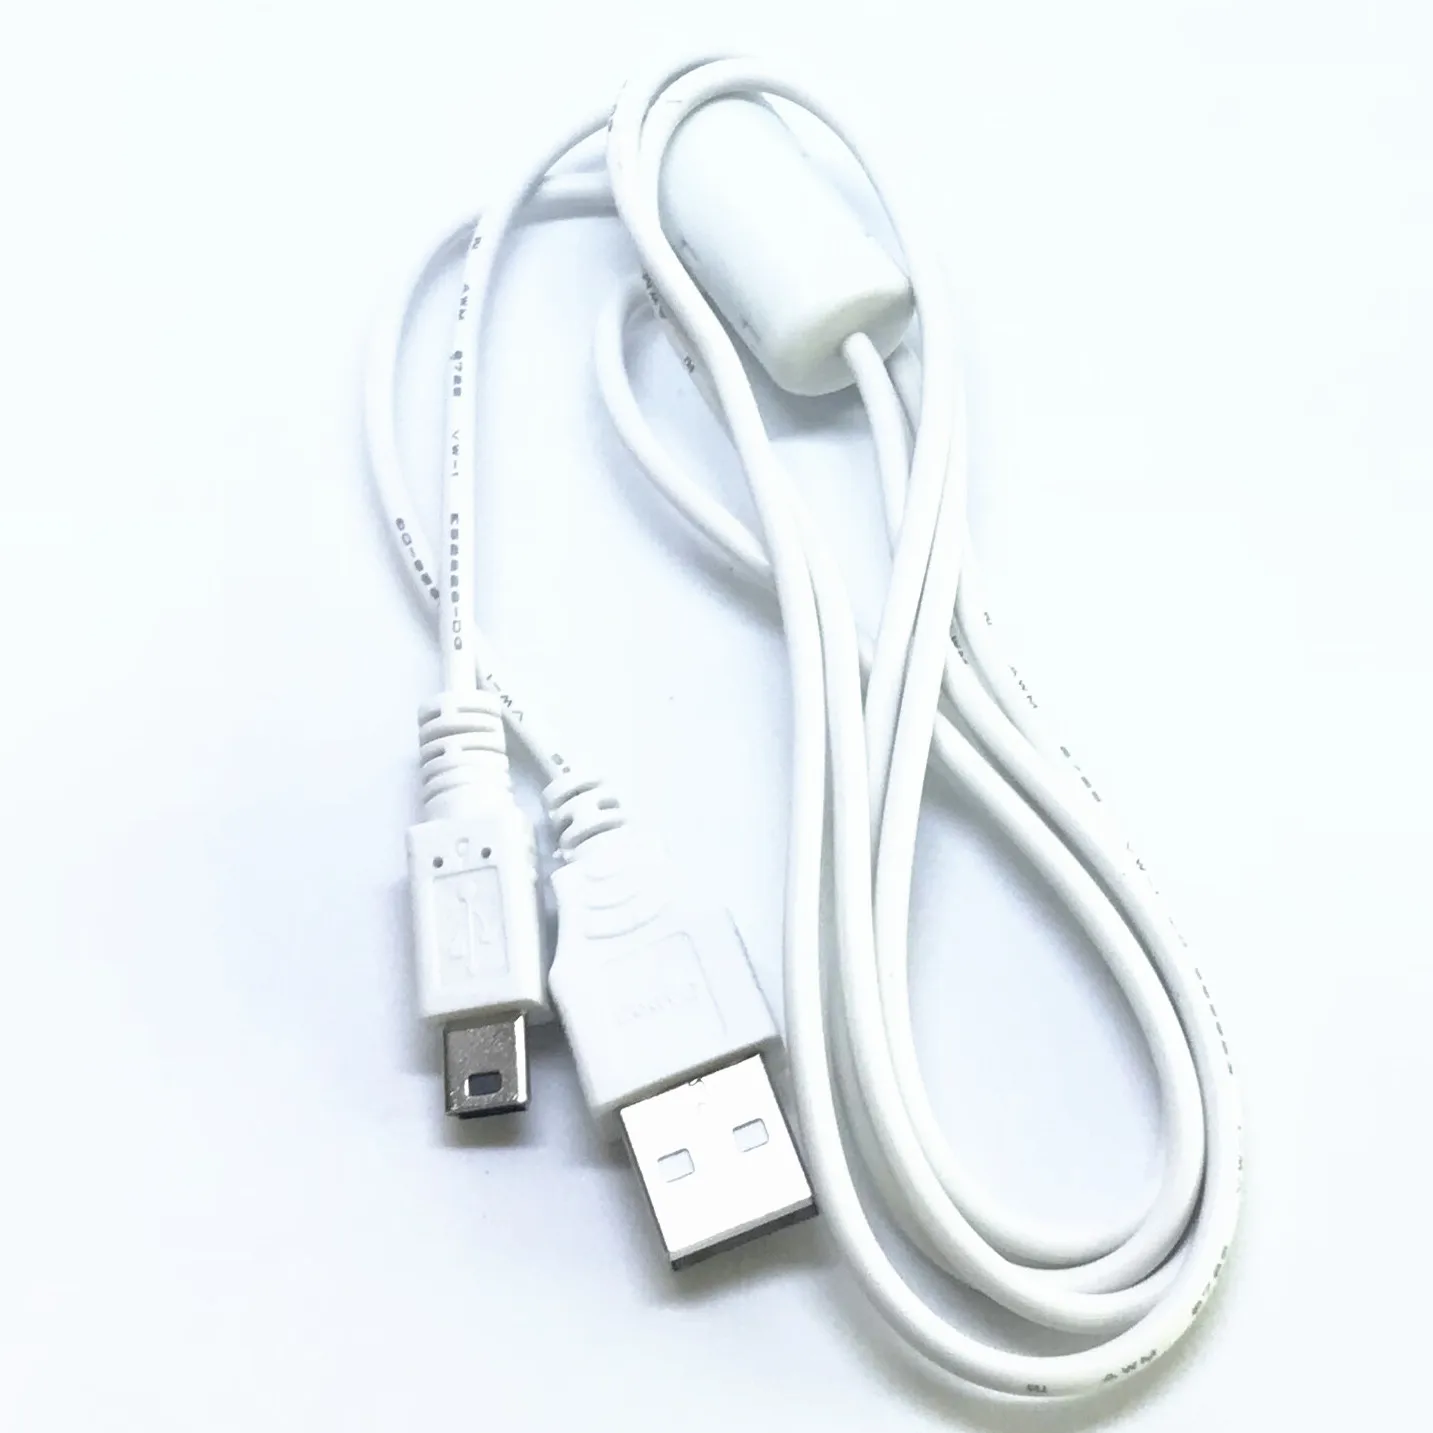 Черные и белые usb-кабель для передачи данных(синхронизации) и зарядки кабель для SONY NEX-5N NEX-7 NEX-C3 SLT-A33 SLT-A35